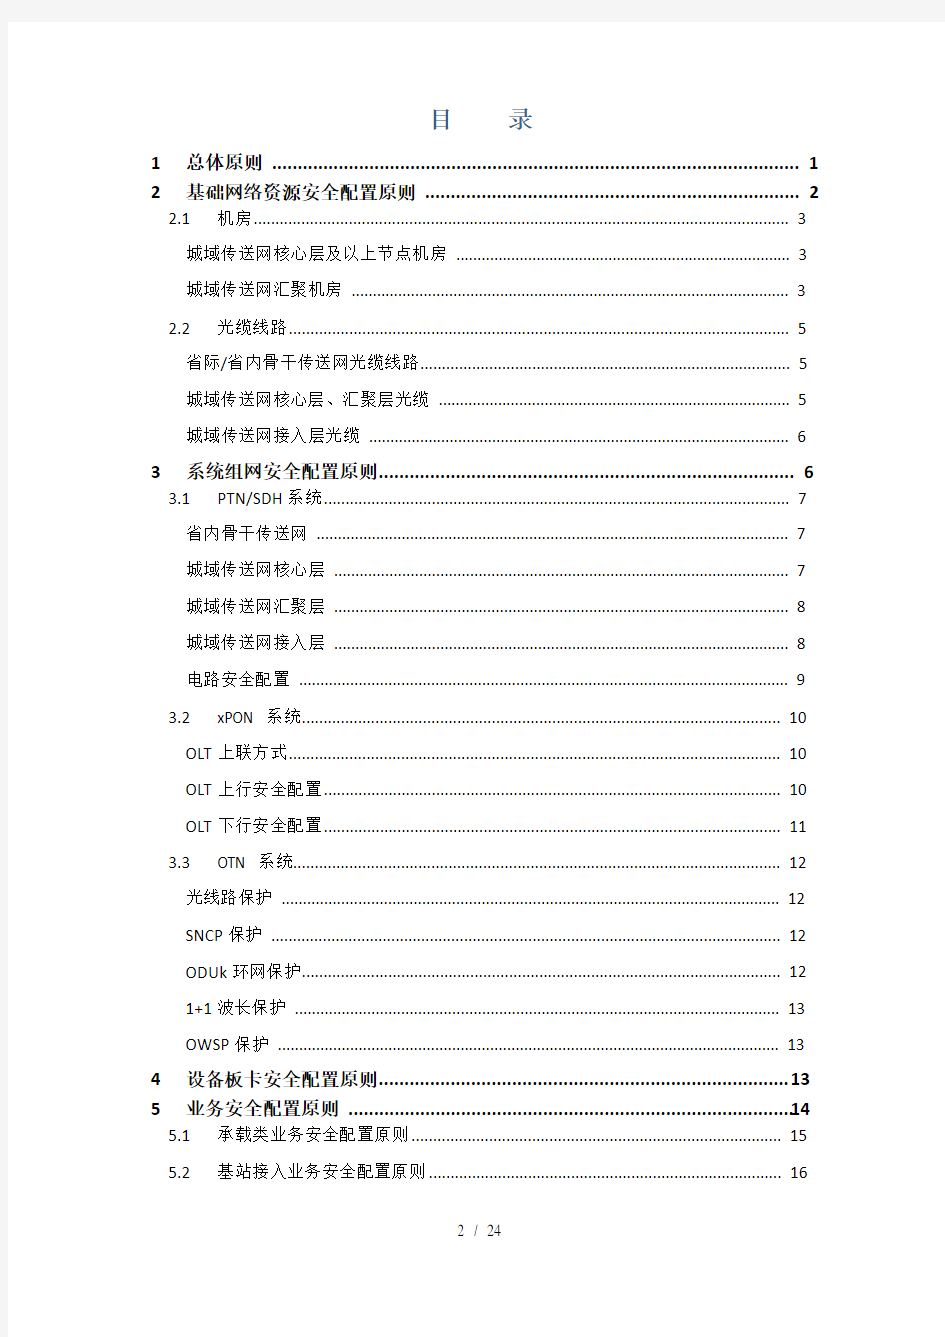 《中国移动传送网络保护资源规划配置指导原则(2013版)》